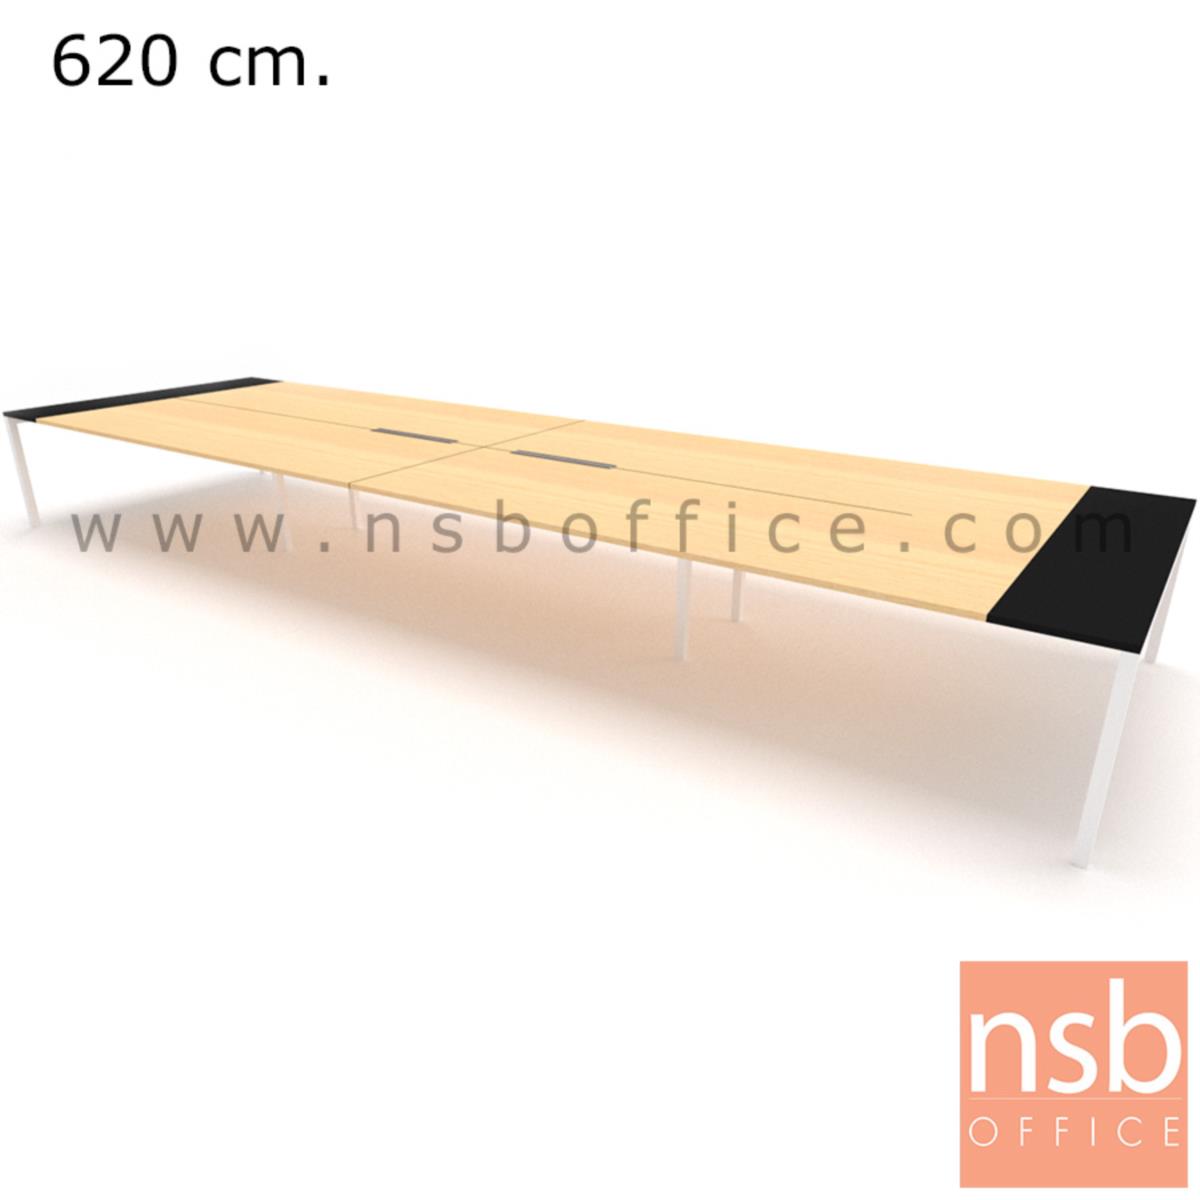 โต๊ะประชุมทรงสี่เหลี่ยม 180D cm. รุ่น NSB-SQ18  พร้อมรางไฟแบบสองทาง รหัส A24A006